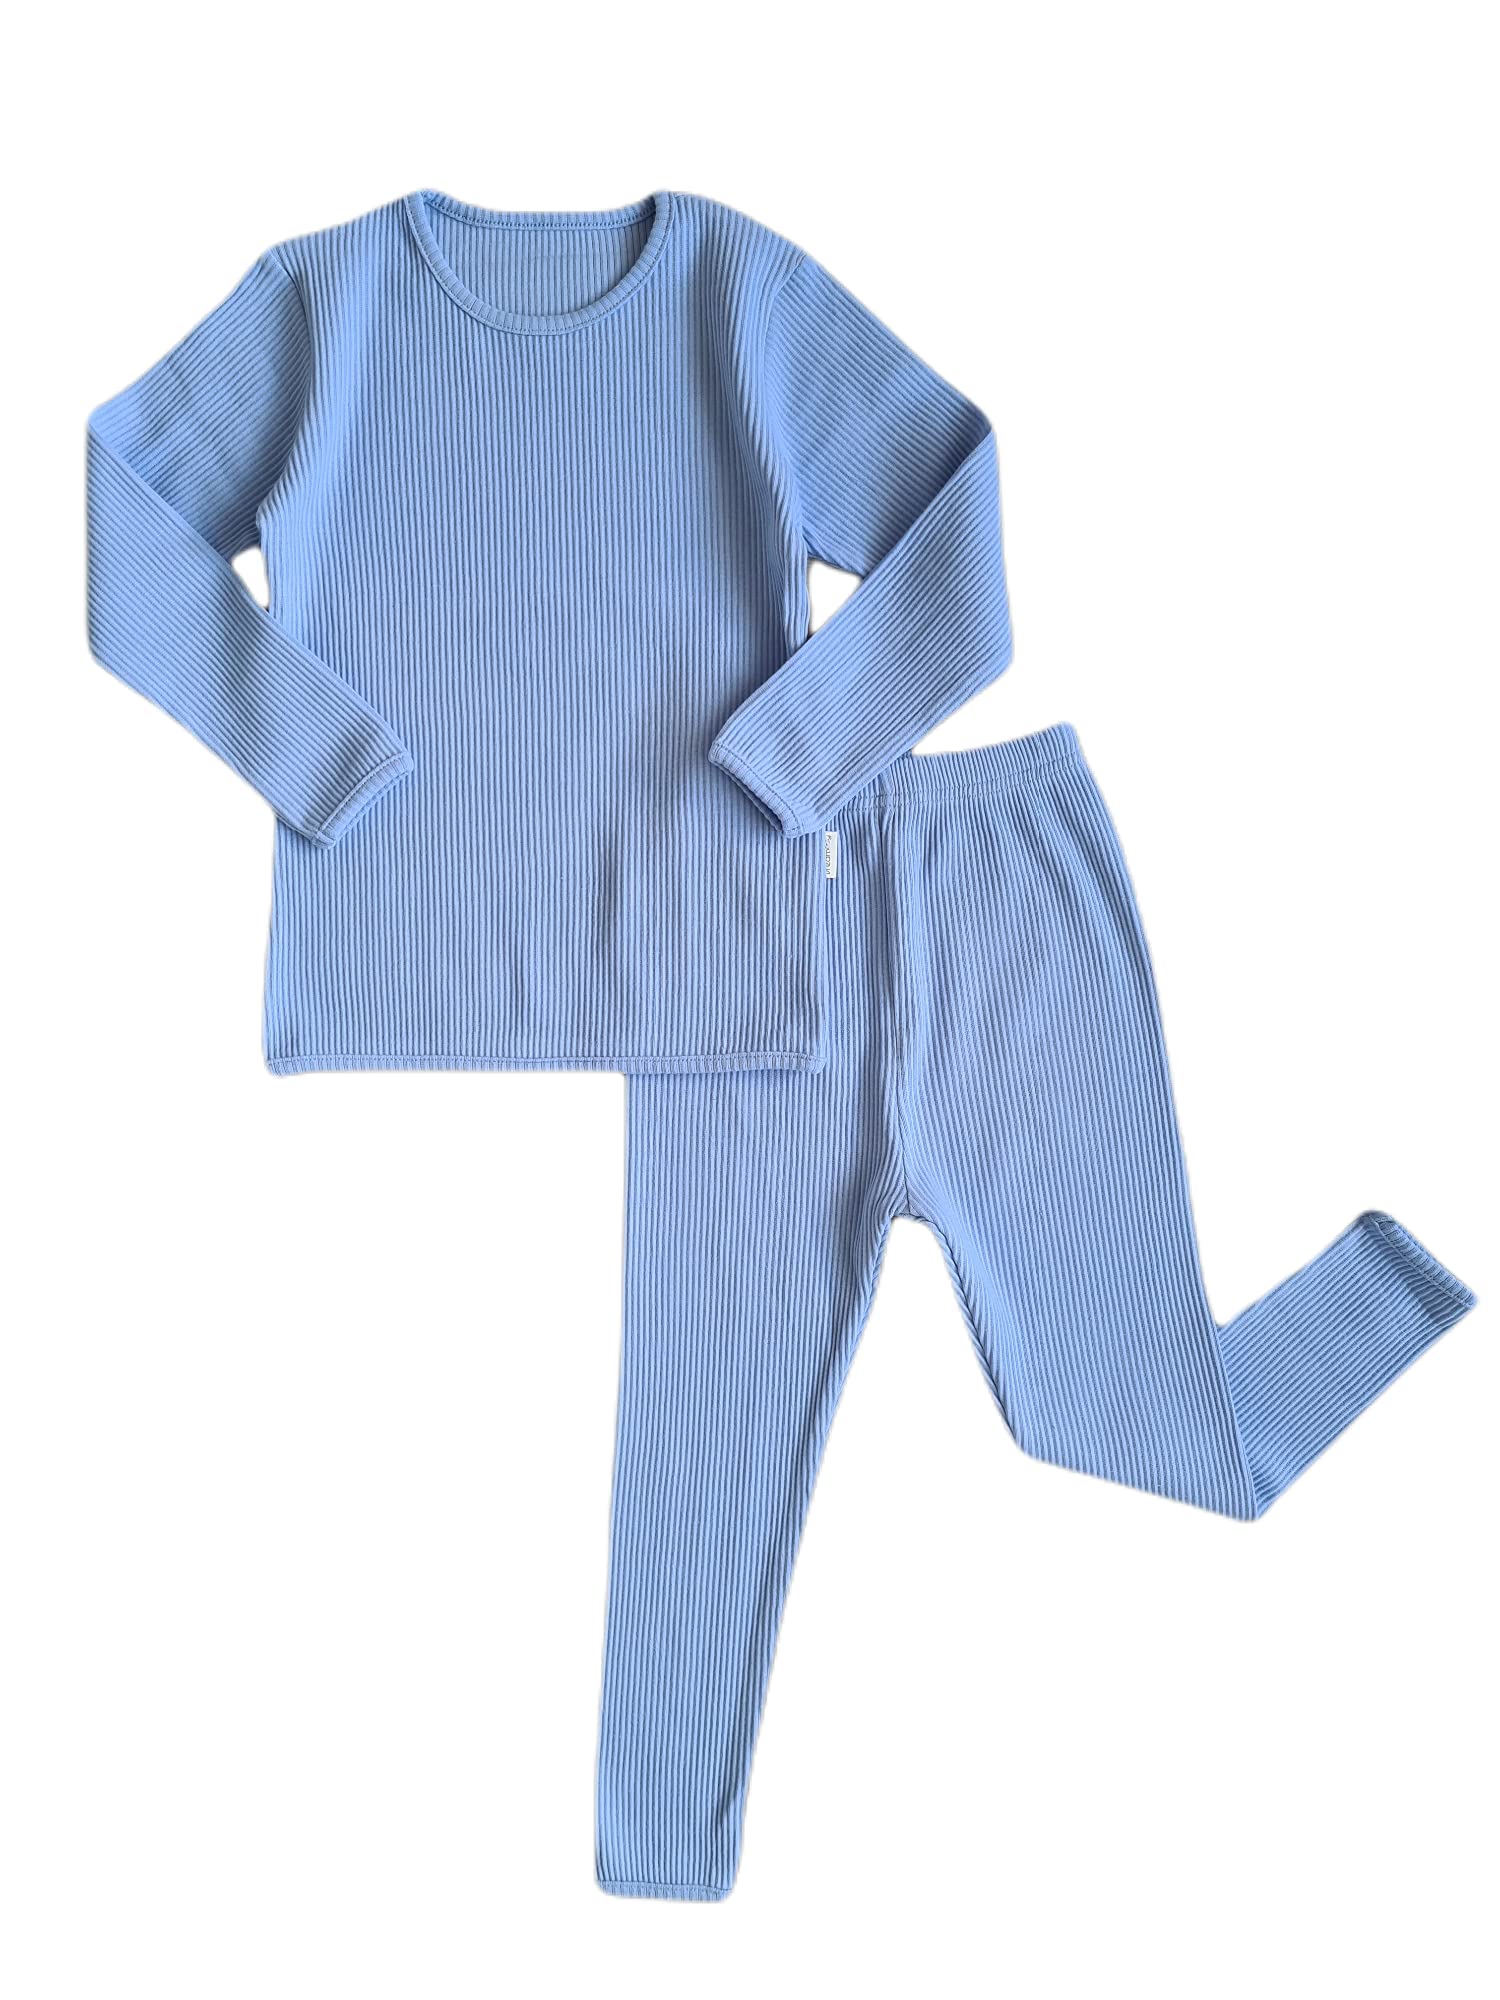 Gerippter Schlafanzug in 20 Farben, Trainingsanzug, Loungewear, Unisex, für Jungen und Mädchen, Babybekleidung, Pyjama für Damen und Herren, powder blue, 7-8 Jahre